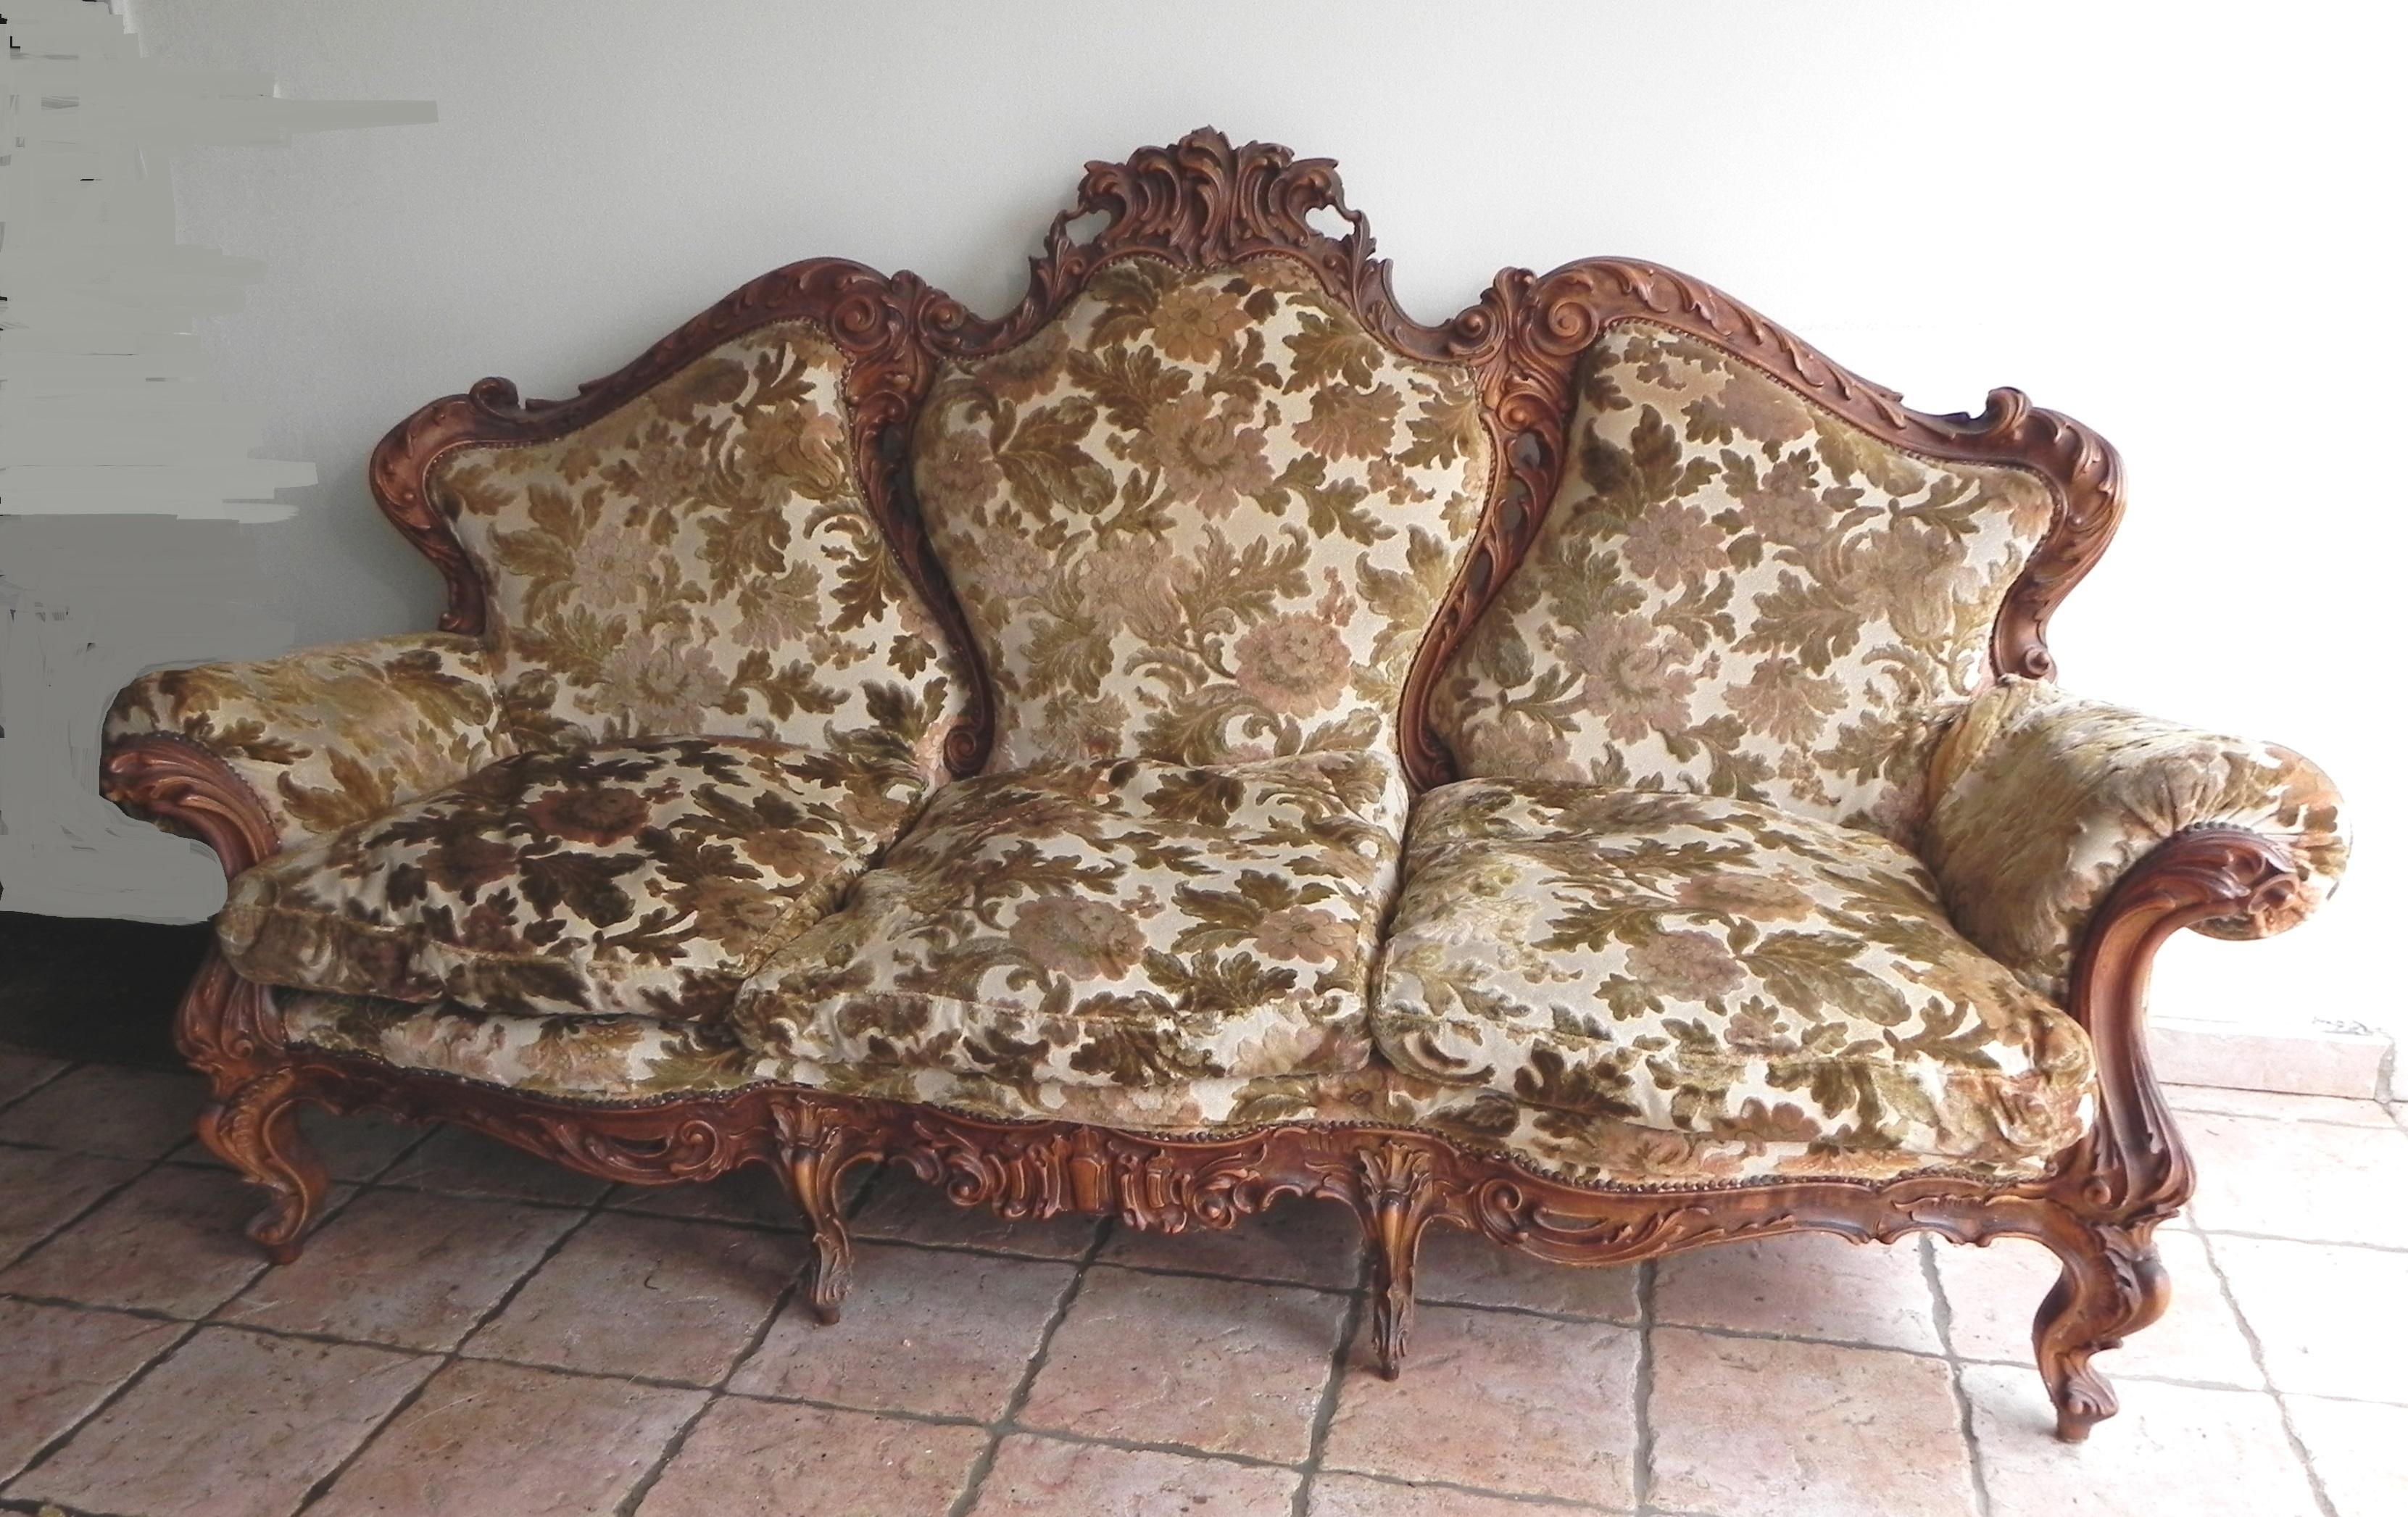 Divano 3 posti, stile barocco Siciliano, anni '70. Il divano è originale anni '70, proviene da Palermo. Gusto e stile tipicamente Barocco, struttura in legno di ulivo con intagli a mano di altissimo livello artigianale. Tessuto Sanderson con disegni